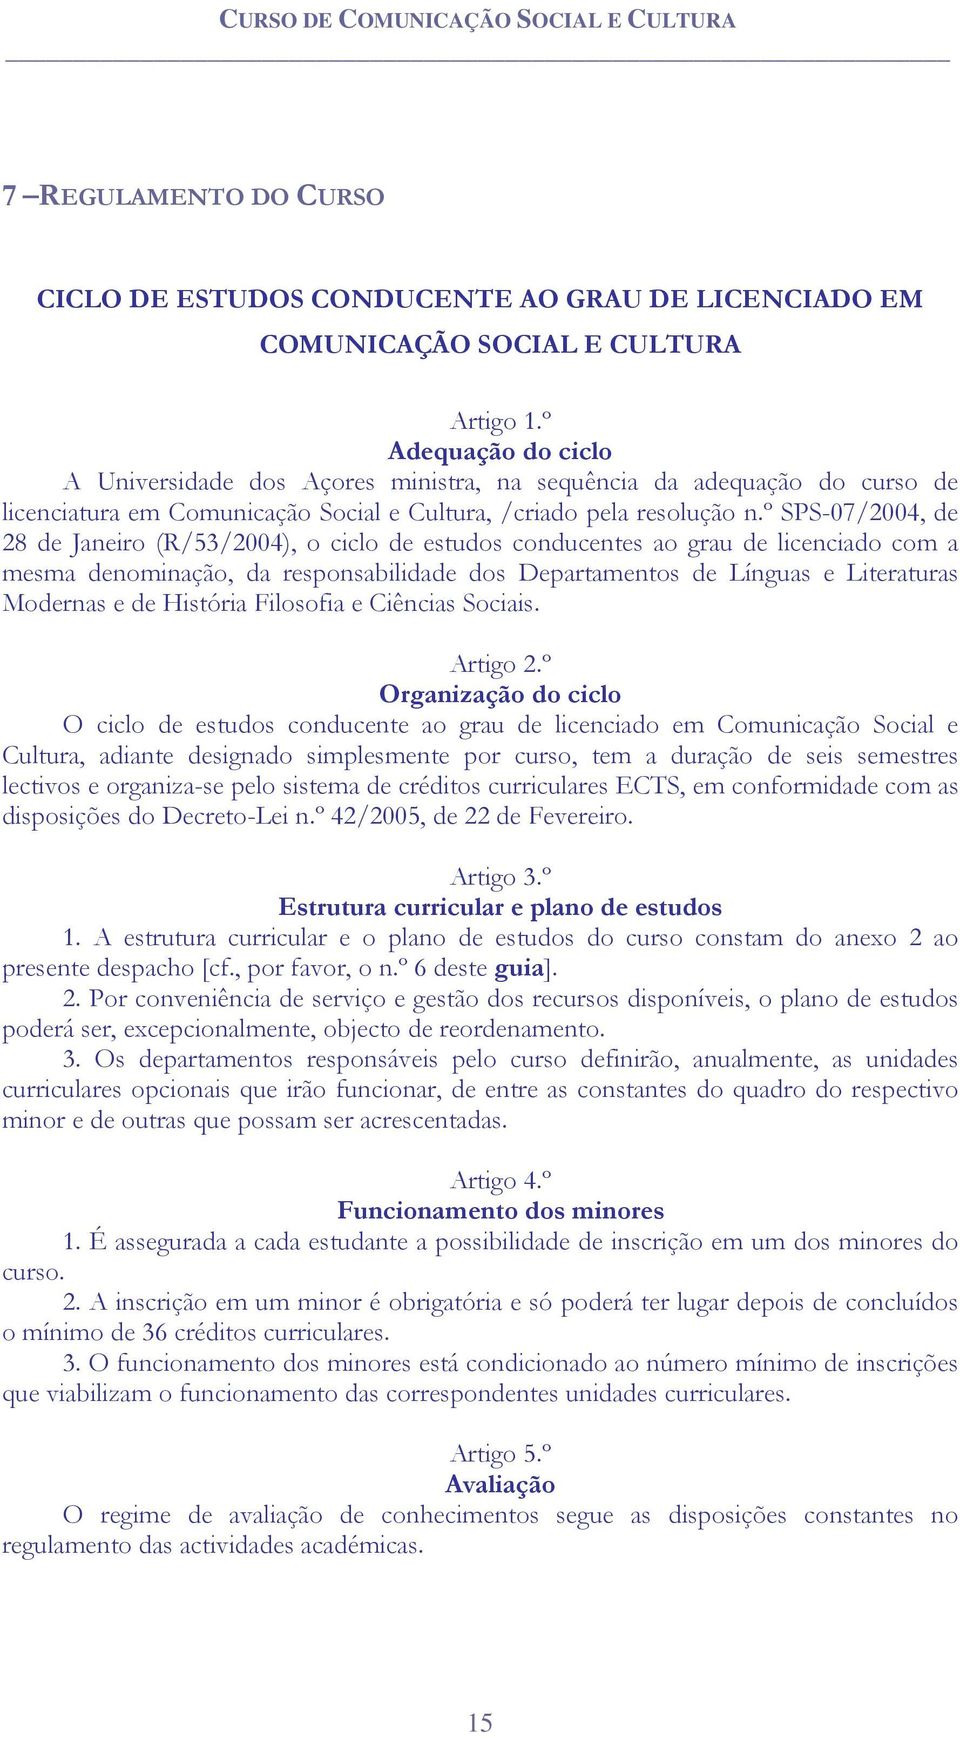 º SPS-07/2004, de 28 de Janeiro (R/53/2004), o ciclo de estudos conducentes ao grau de licenciado com a mesma denominação, da responsabilidade dos Departamentos de Línguas e Literaturas Modernas e de